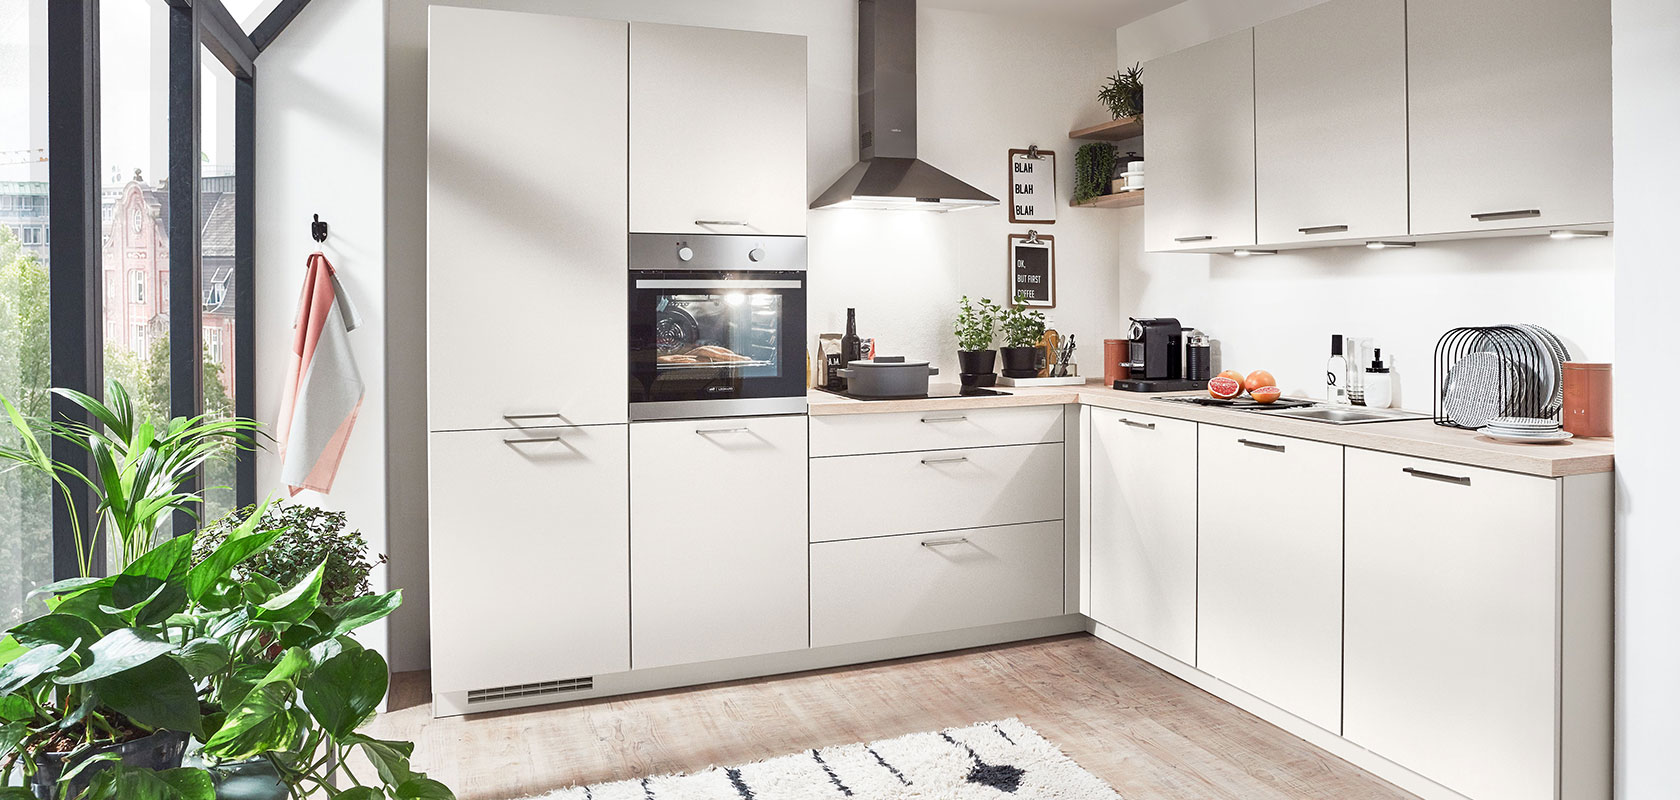 Intérieur de cuisine moderne avec des armoires blanches, des appareils intégrés et une touche de verdure près de la fenêtre, illustrant un design de maison urbaine propre et contemporain.